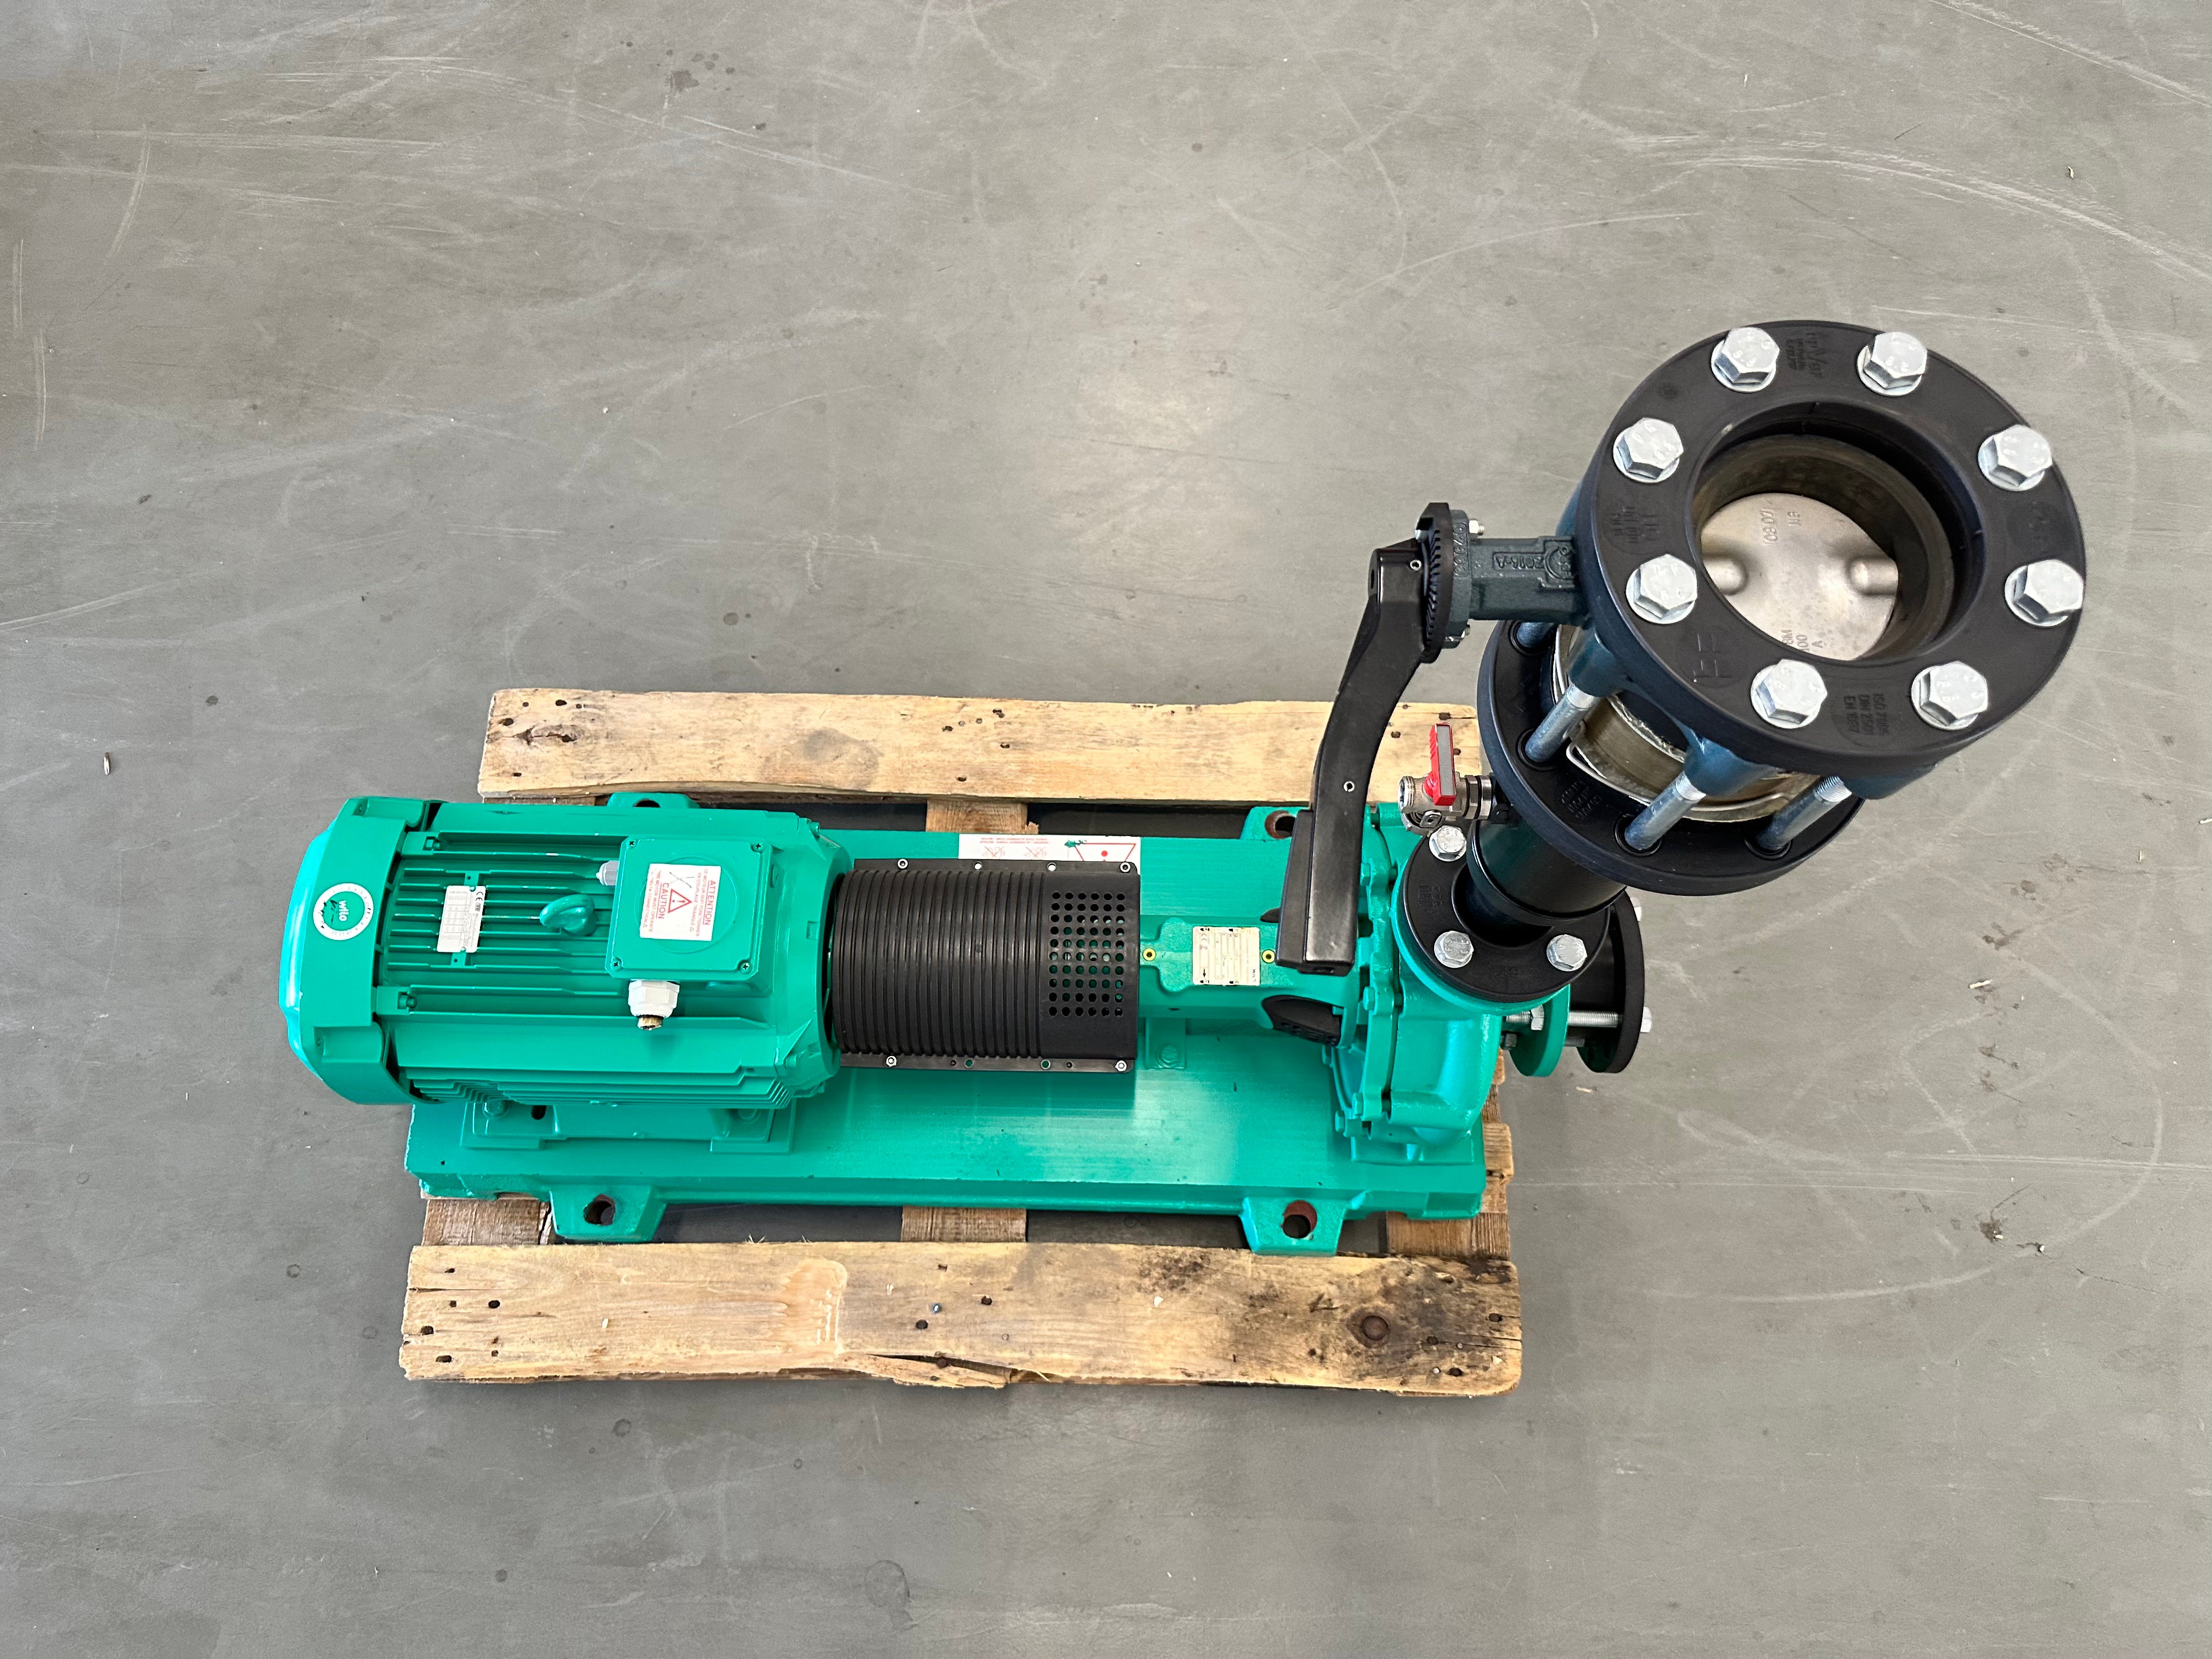 Pompa centrifuga a bassa pressione monostadio WILO NL50/250-18.5-2-12